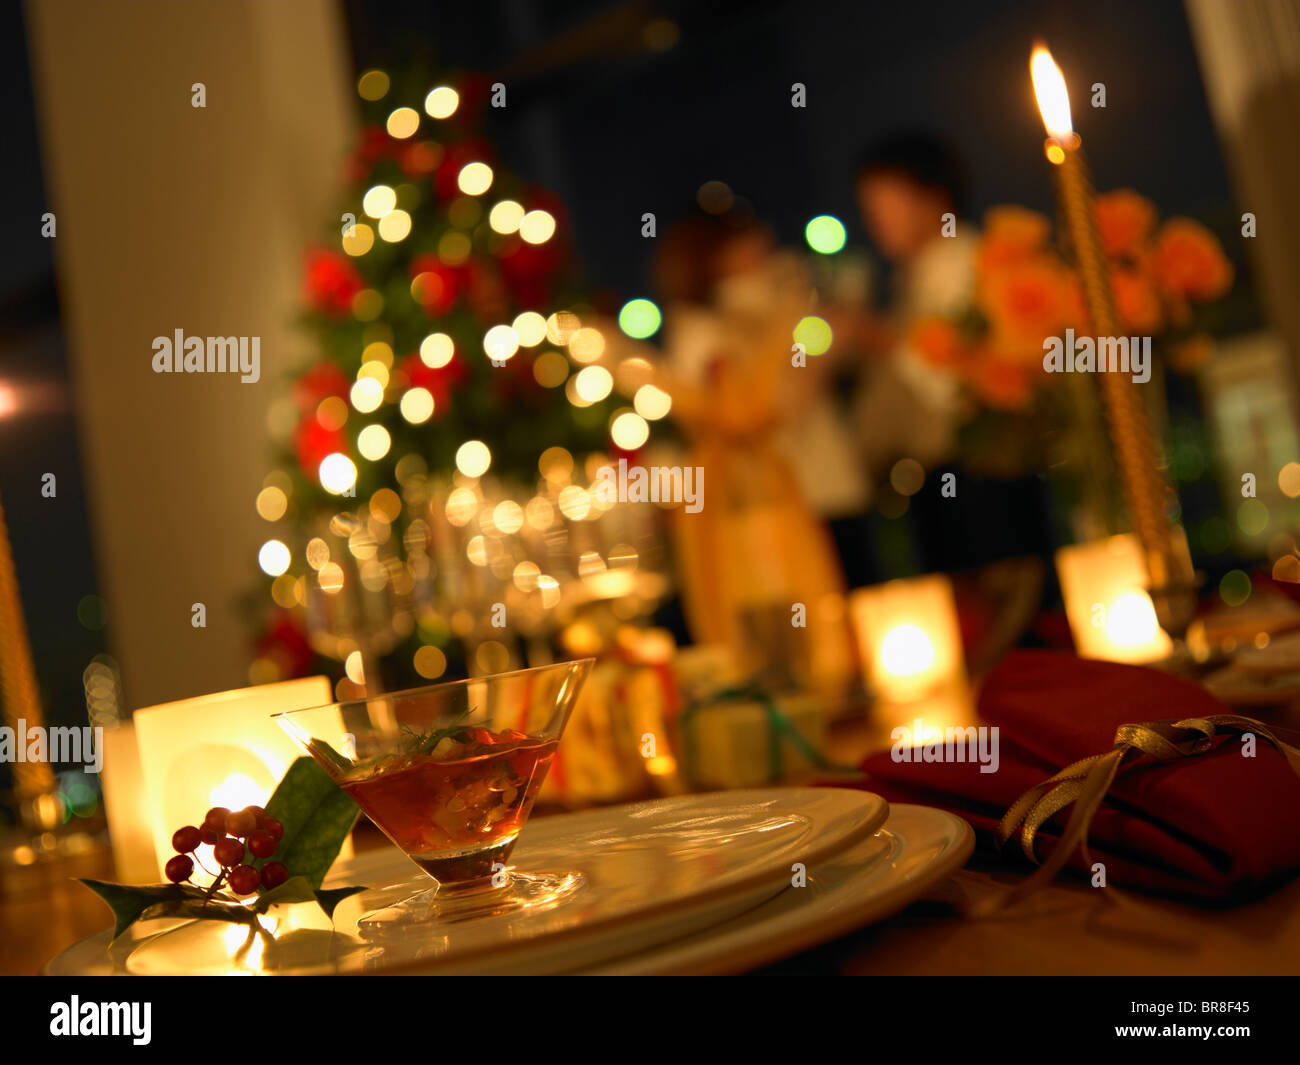 Table décorée pour Noël, differential focus Banque D'Images